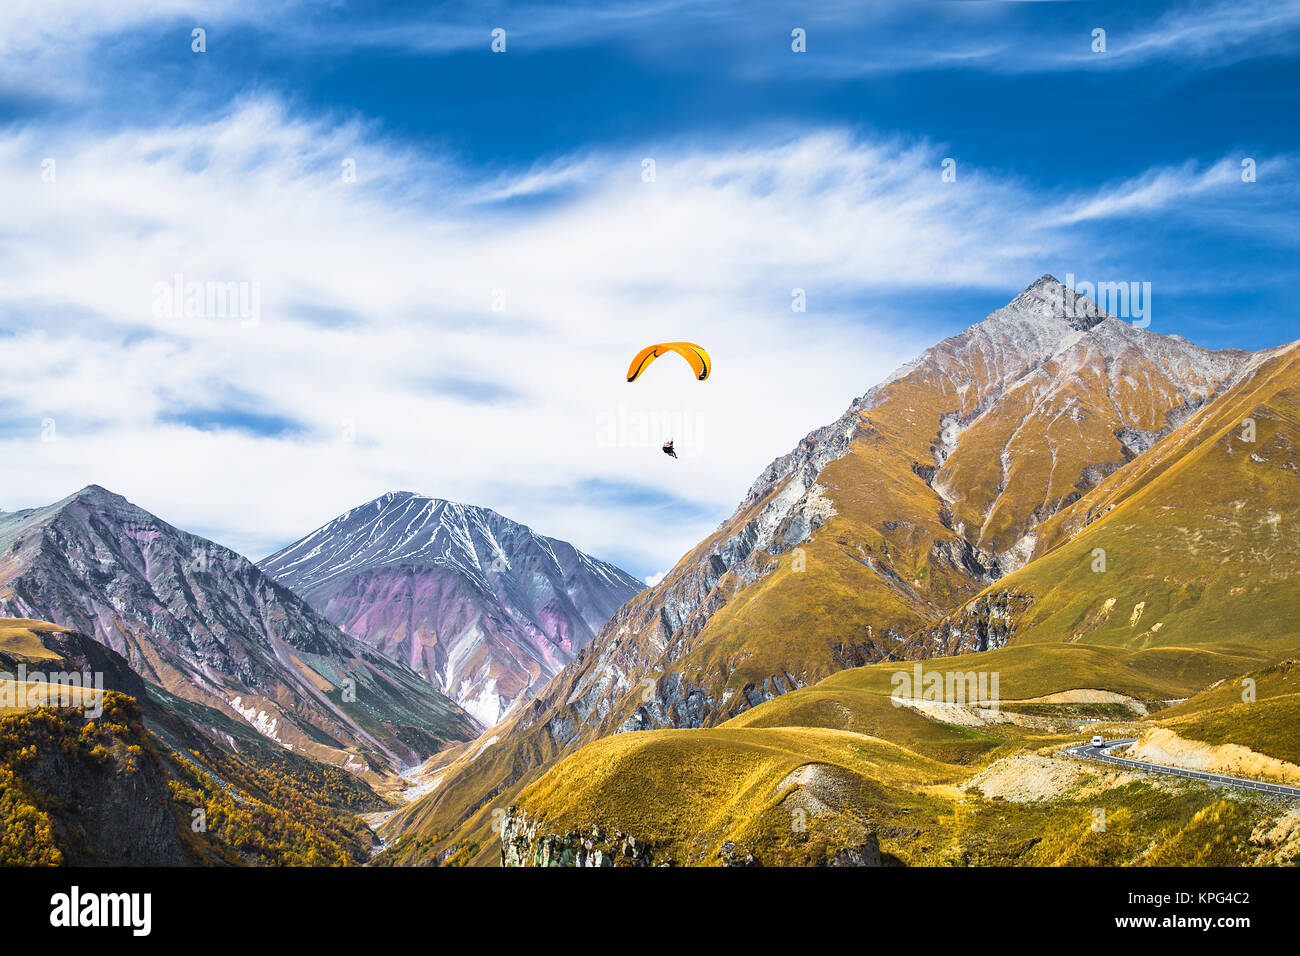 Paragliding over mountains of Gudauri.  Georgia. Europe. Stock Photo